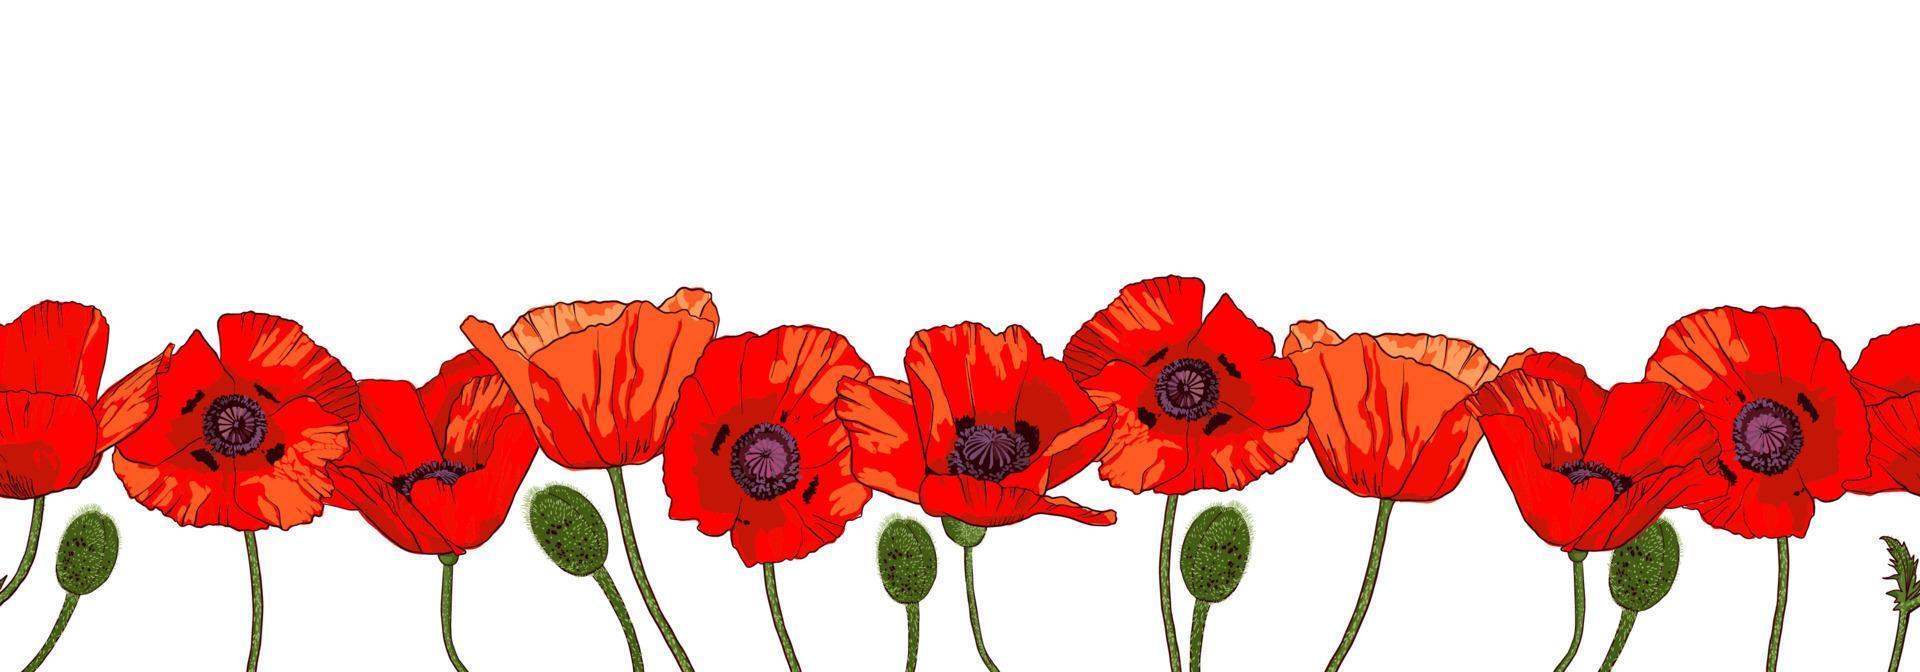 borda sem costura horizontal com flores de papoula vermelhas desenhadas à mão, isoladas no fundo branco. ilustração vetorial. vetor